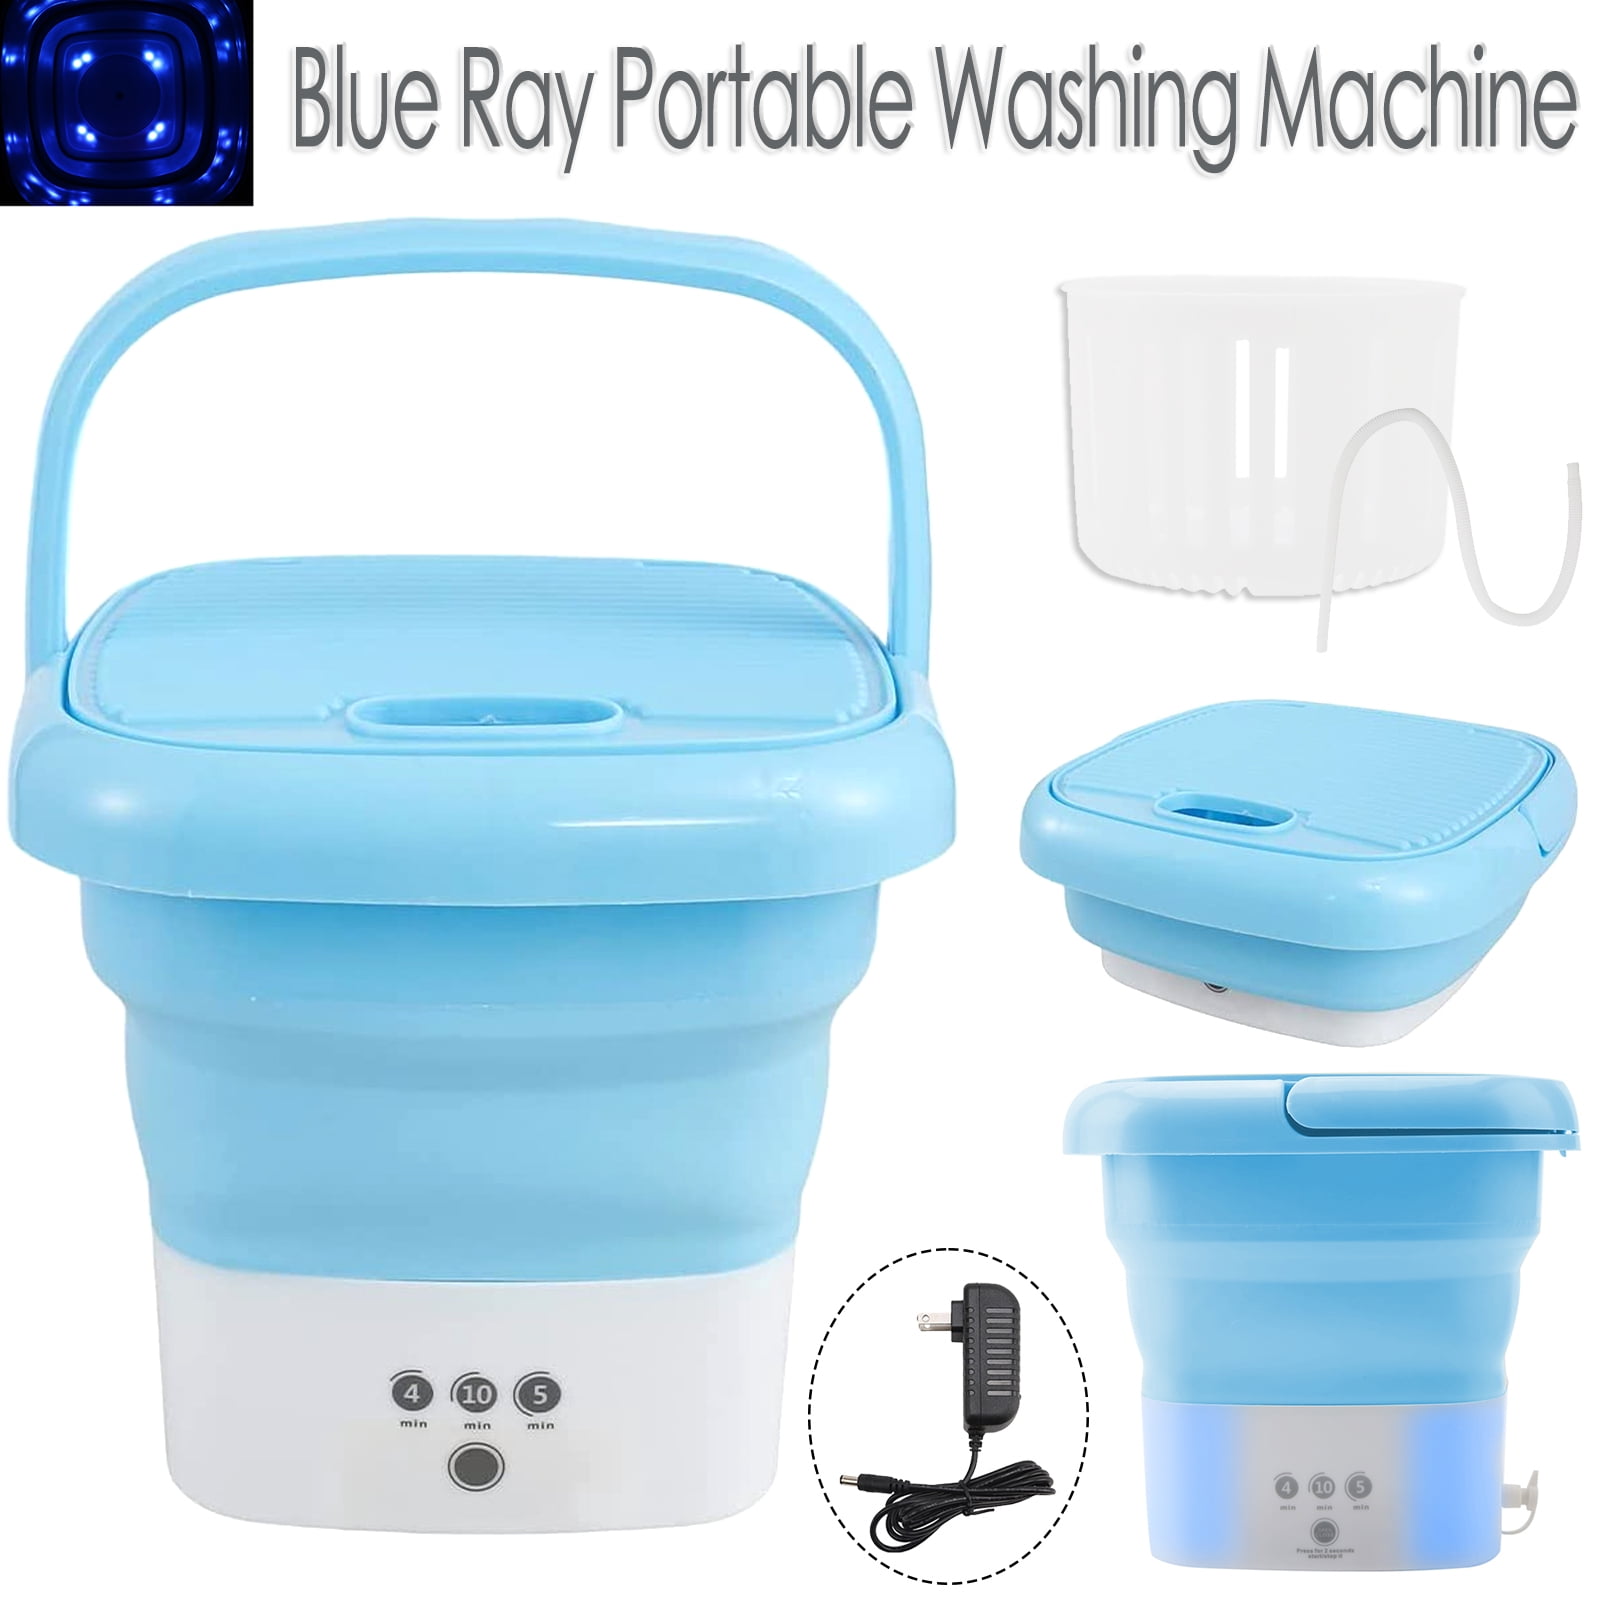 OhhGo Portable Washing Machine, Foldable Mini Small Folding Washer